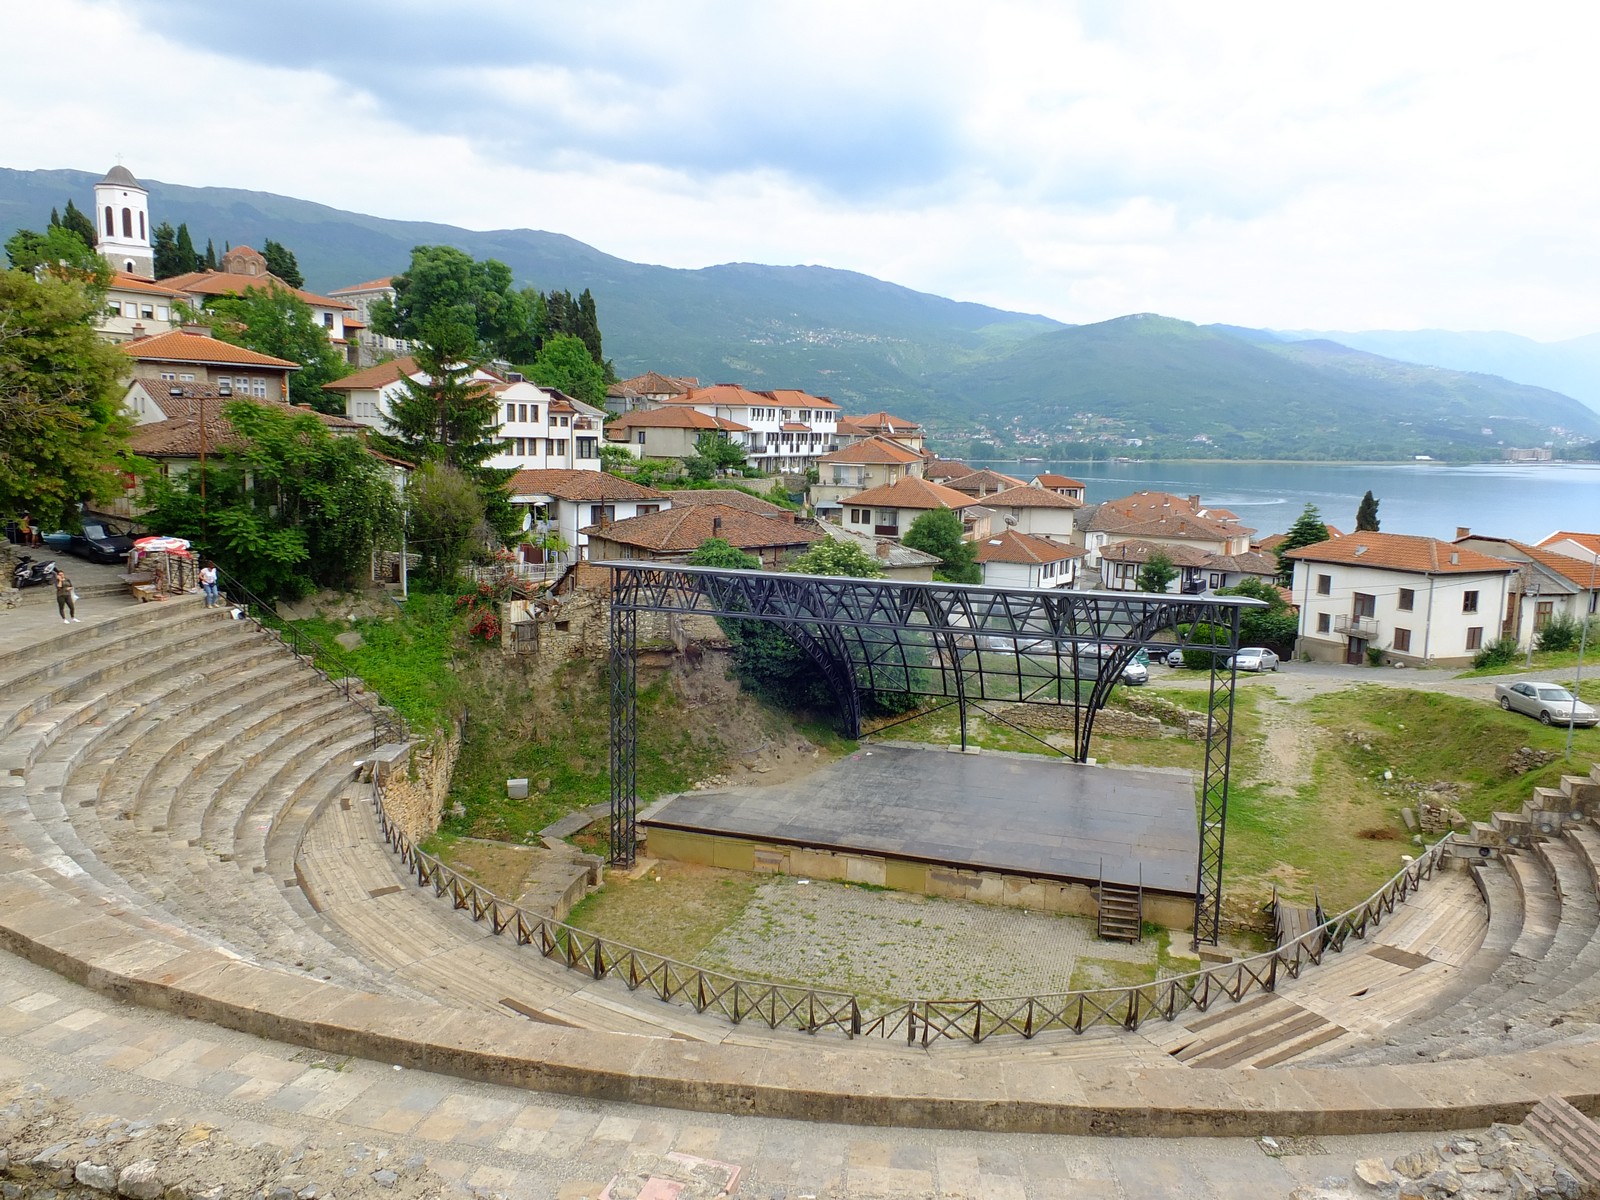 Besuch der Stadt Ohrid in Nordmazedonien (UNESCO Weltkulturerbe) - Lupe Reisen